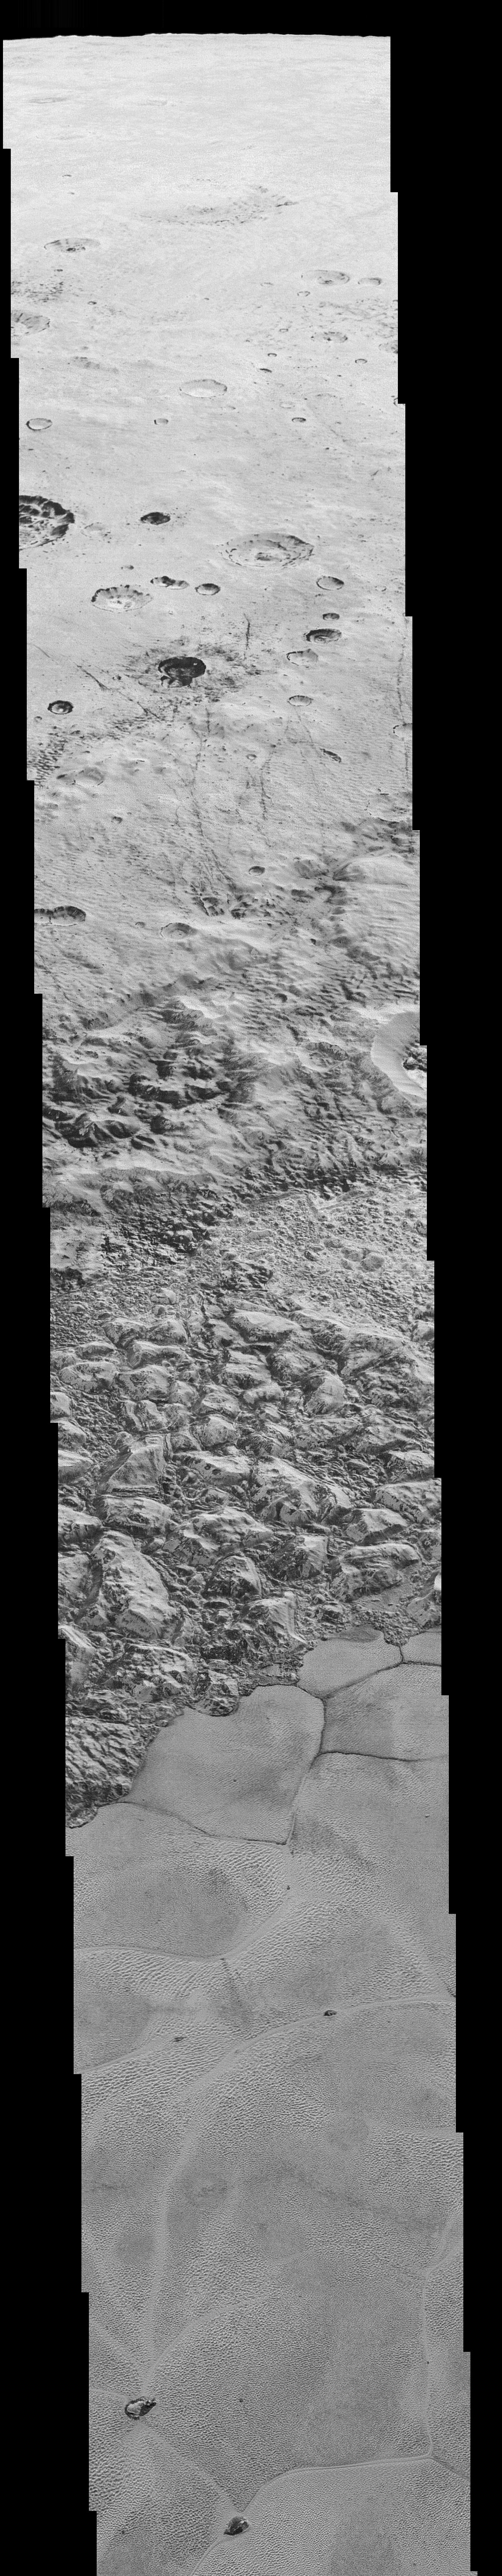 Imagen compuesta a partir de un mosaico que muestra todo un hemisferio de Plutón. Fuente: NASA/JHUAPL/SwRI.